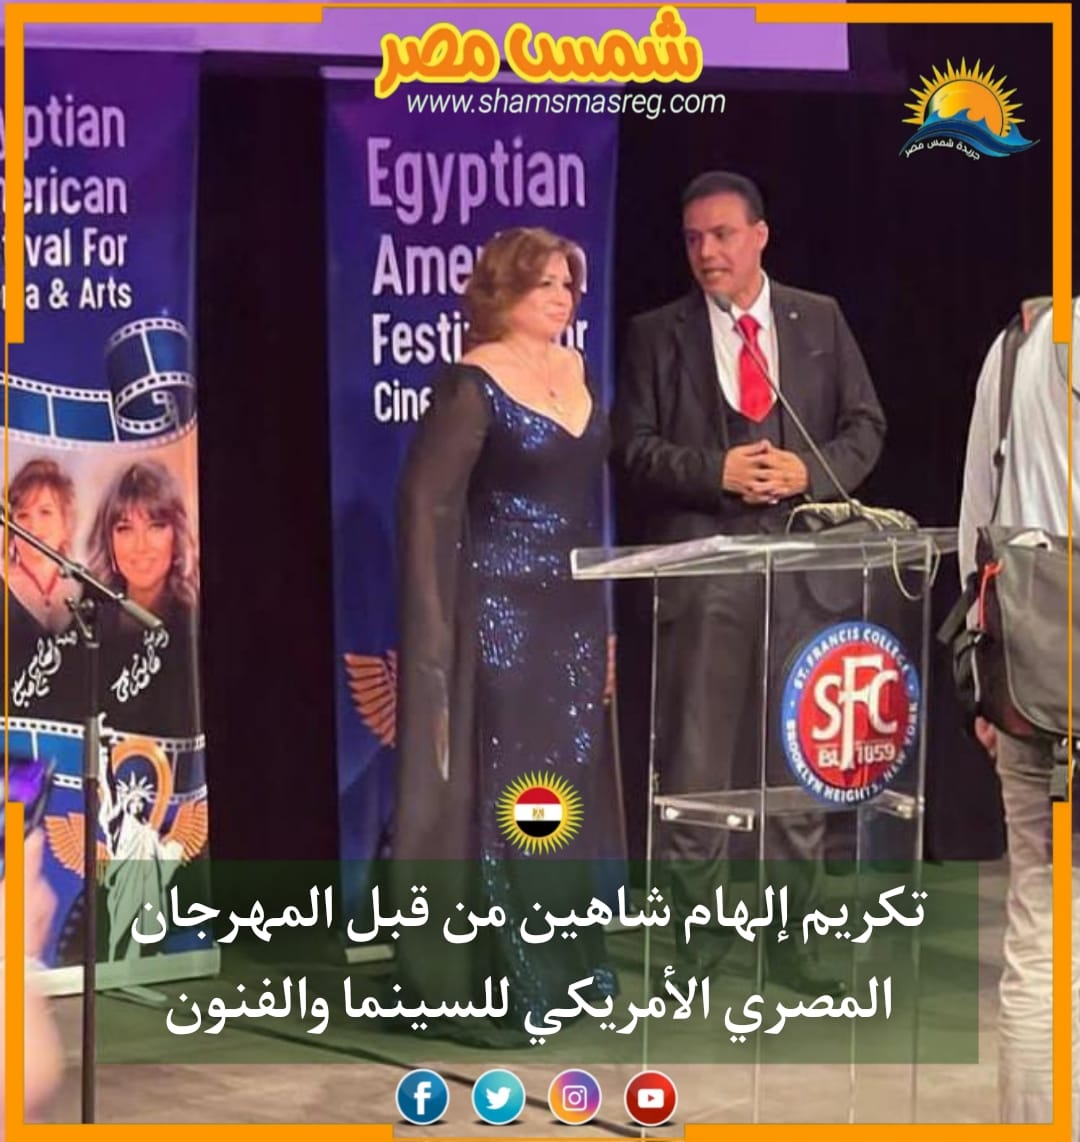 |شمس مصر|.. تكريم إلهام شاهين من قبل المهرجان المصري الأمريكي للسينما والفنون